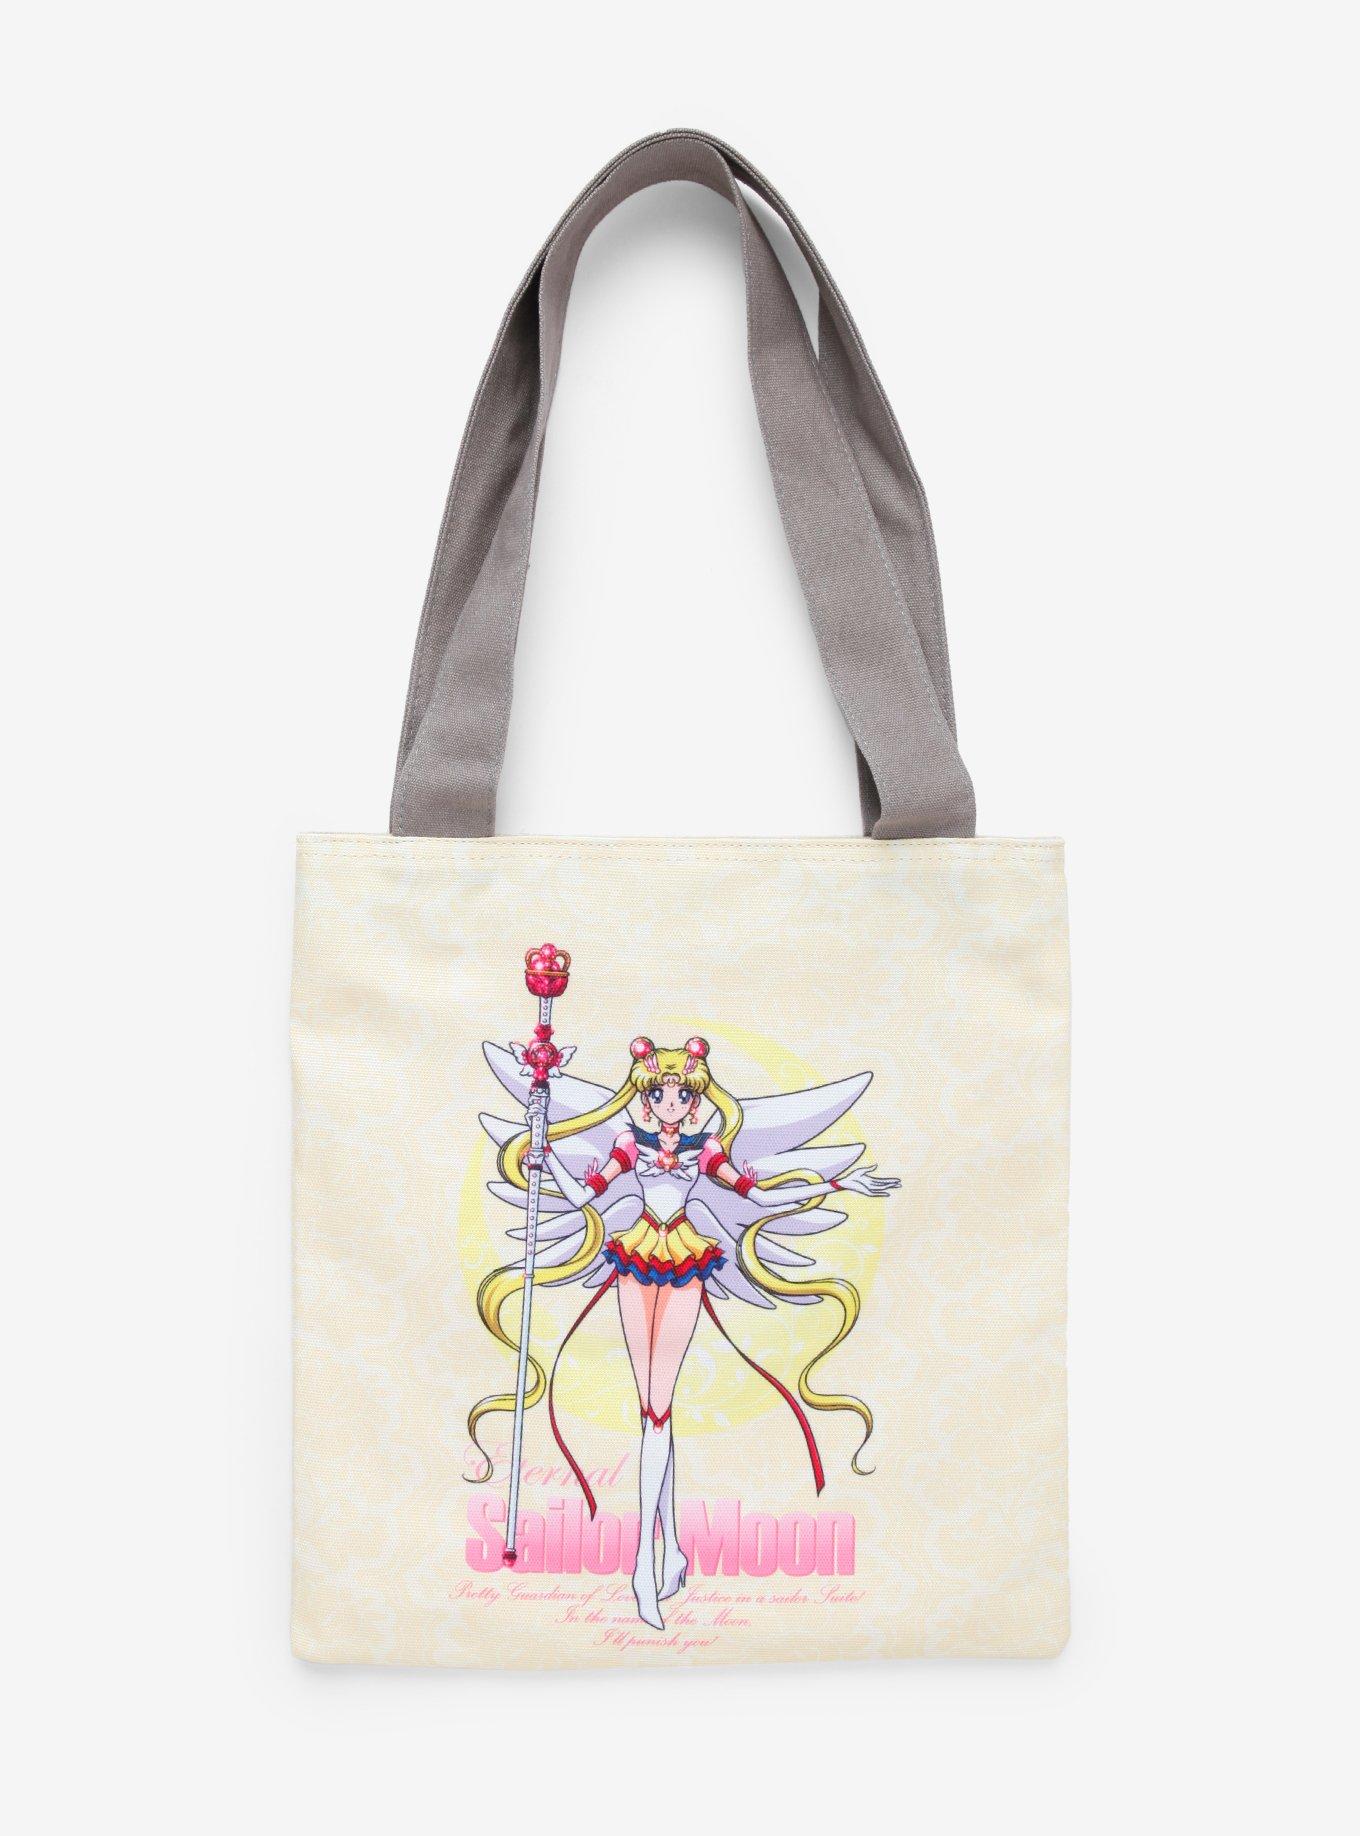 Sailor Moon tote bag  Sailor moon bag  Sailor Moon Tote  anime sailor moon tote bag   Magical girl tote bag  sailor moon TOTE BAG